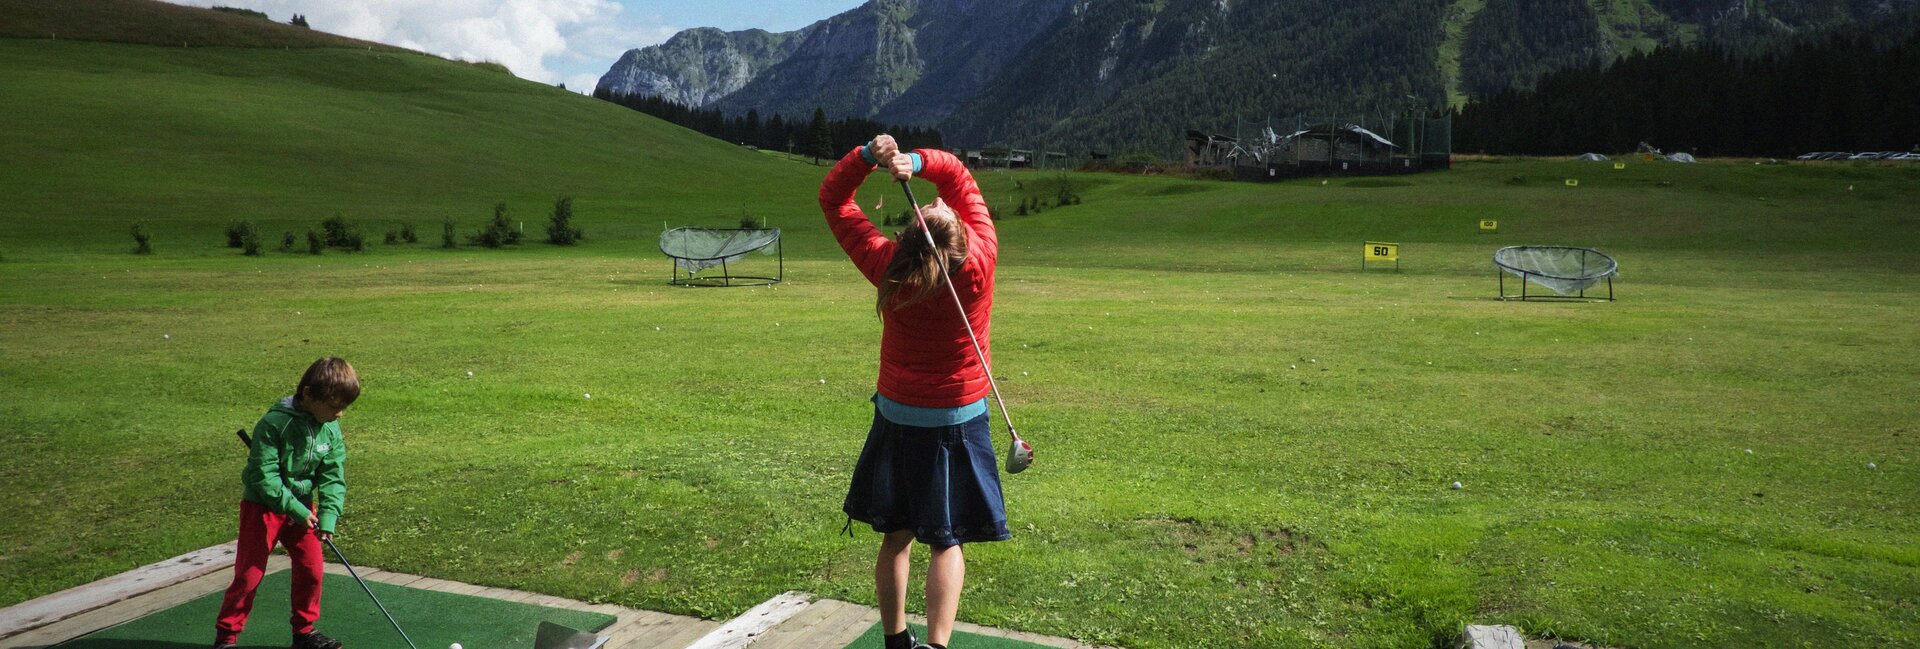 Madonna di Campiglio - Val Rendena - Kinder Golf spielen